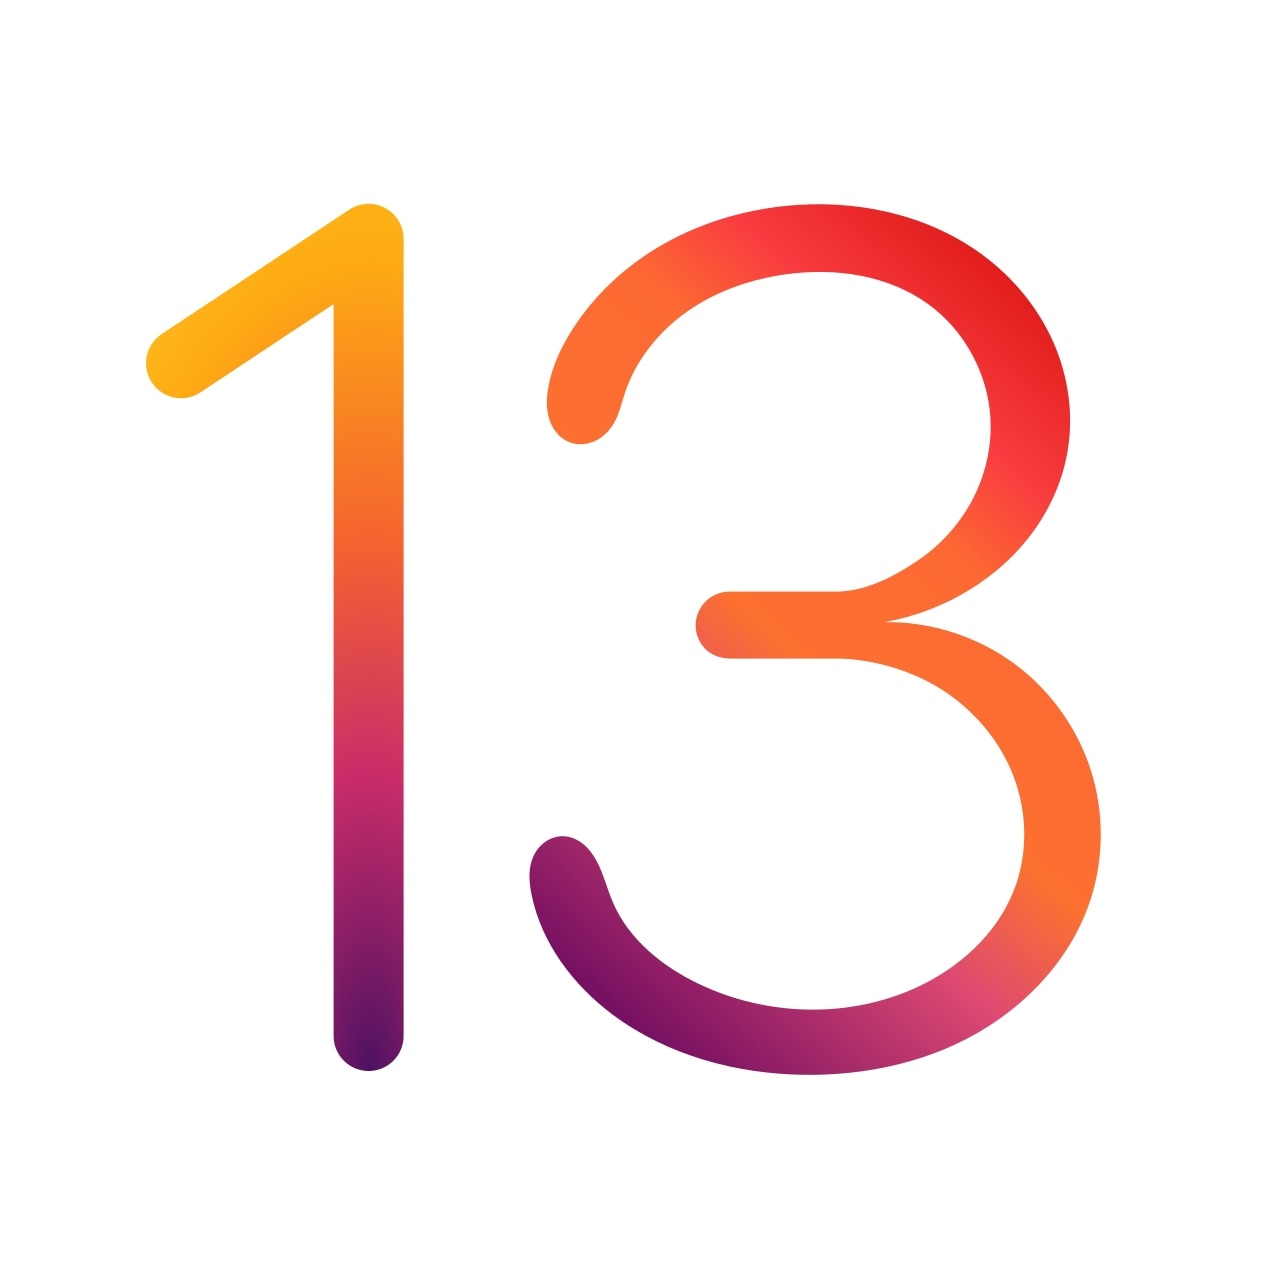 Apple berhenti menandatangani iOS 13.3 sebagai jailbreak baru yang diperbarui mendekati rilis publik 2